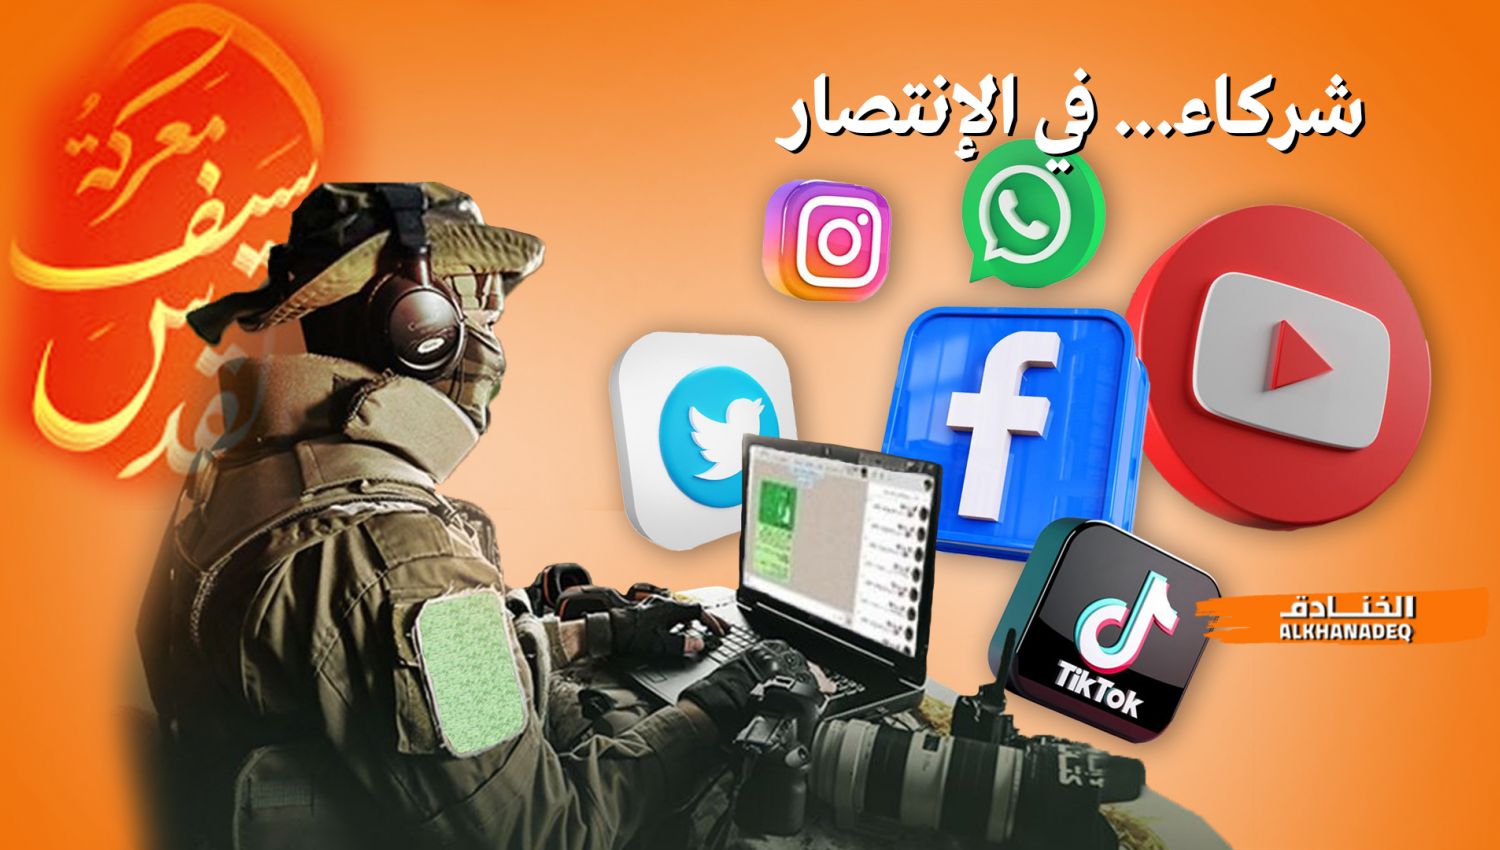 "سيف القدس": كيف حققت وسائل التواصل الاجتماعي النصر أيضا !